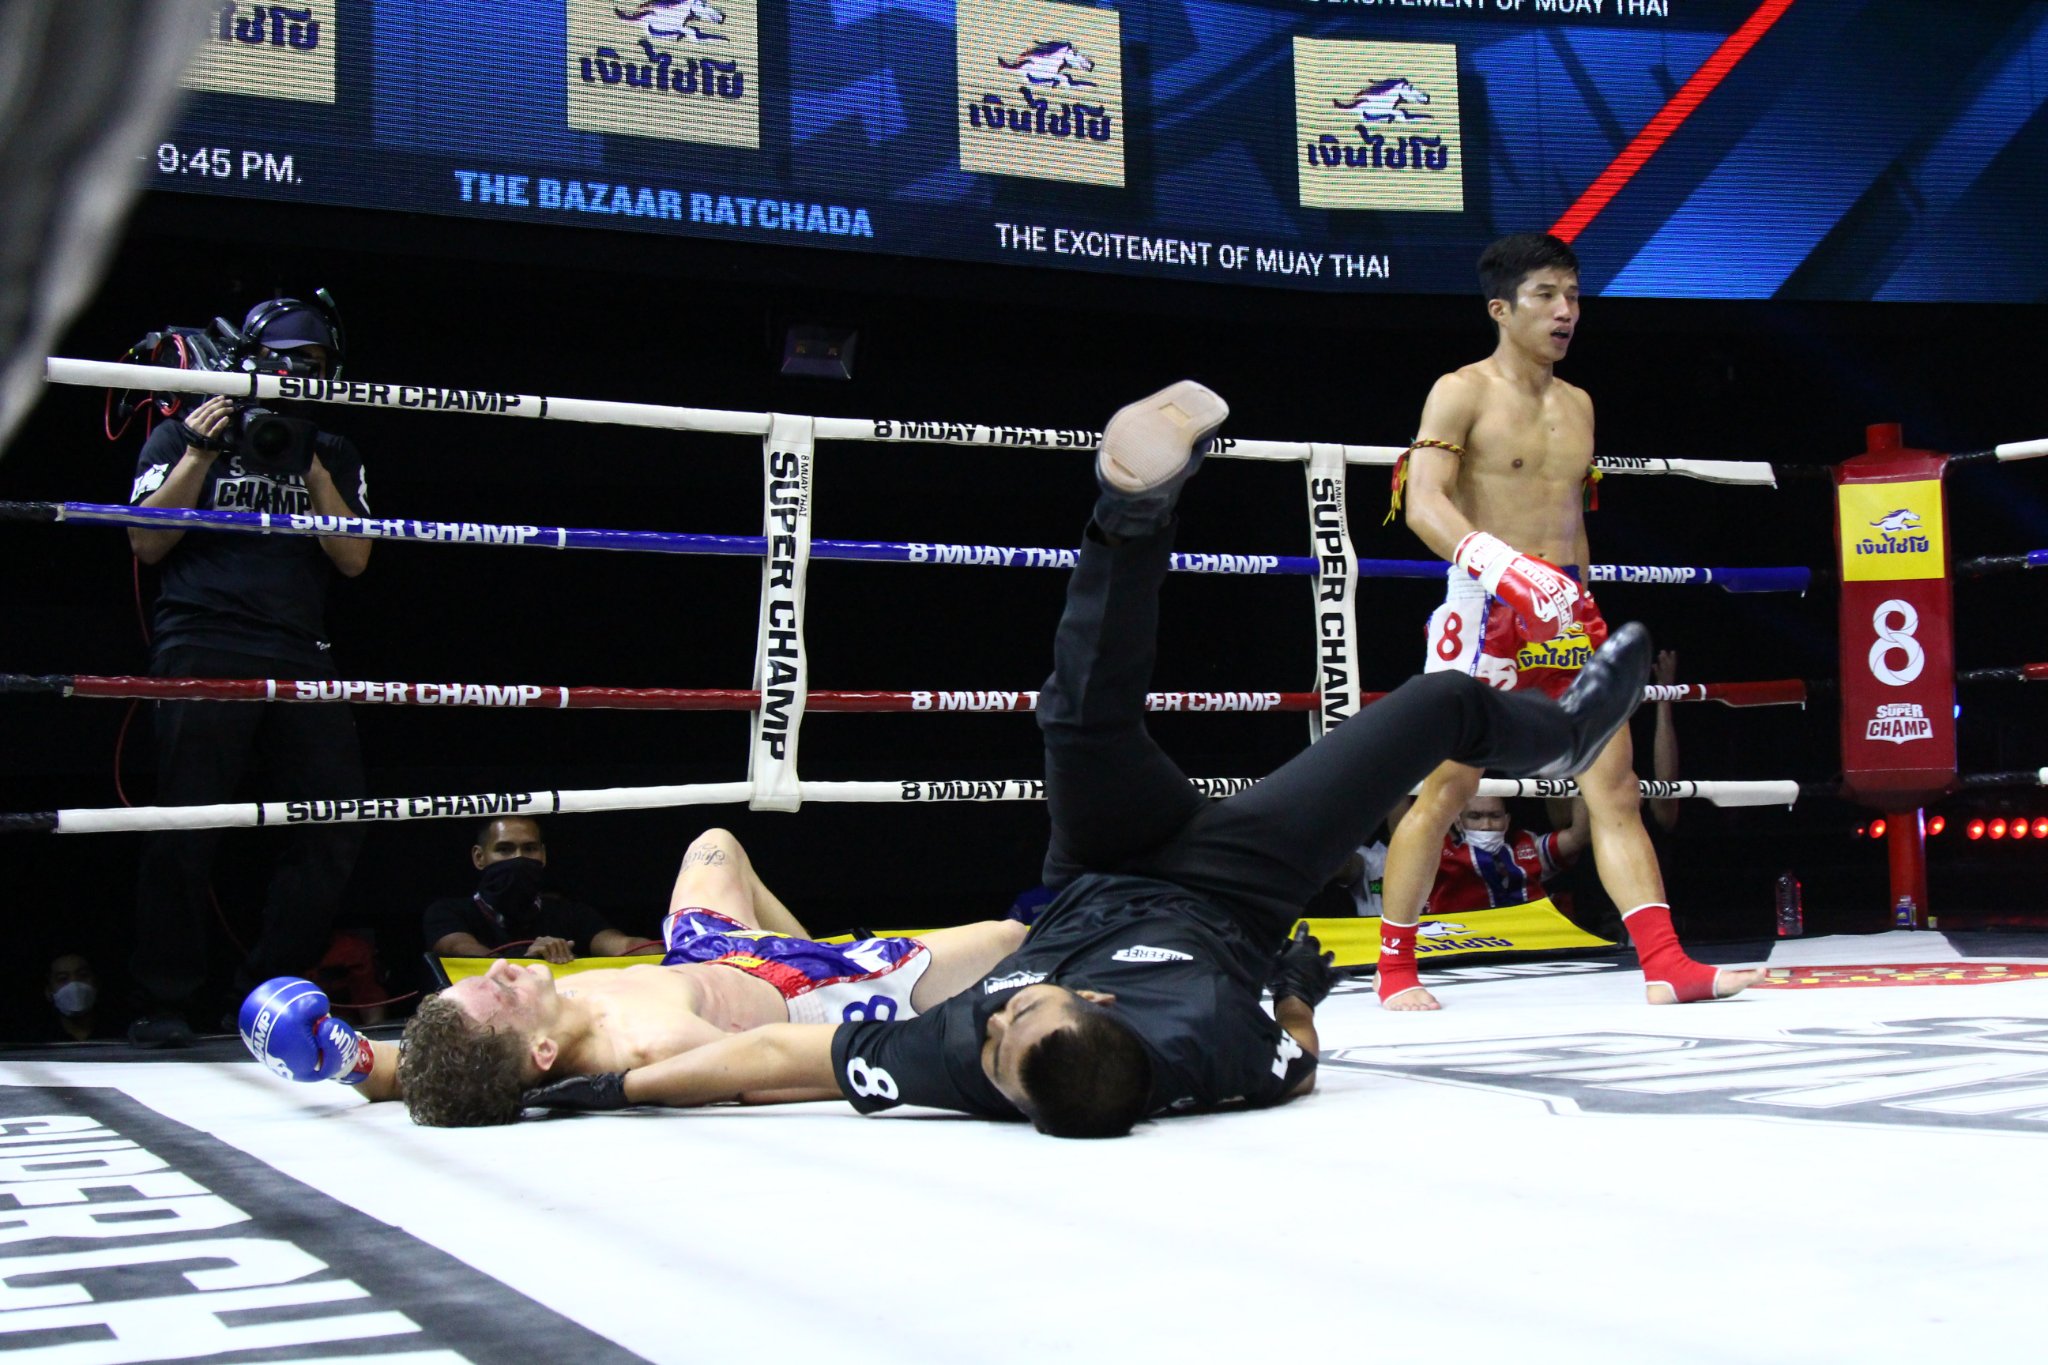 Trương Cao Minh Phát đấu 2 trận Muay trong 1 đêm ở Thái Lan, thắng KO cả 2 - Ảnh 5